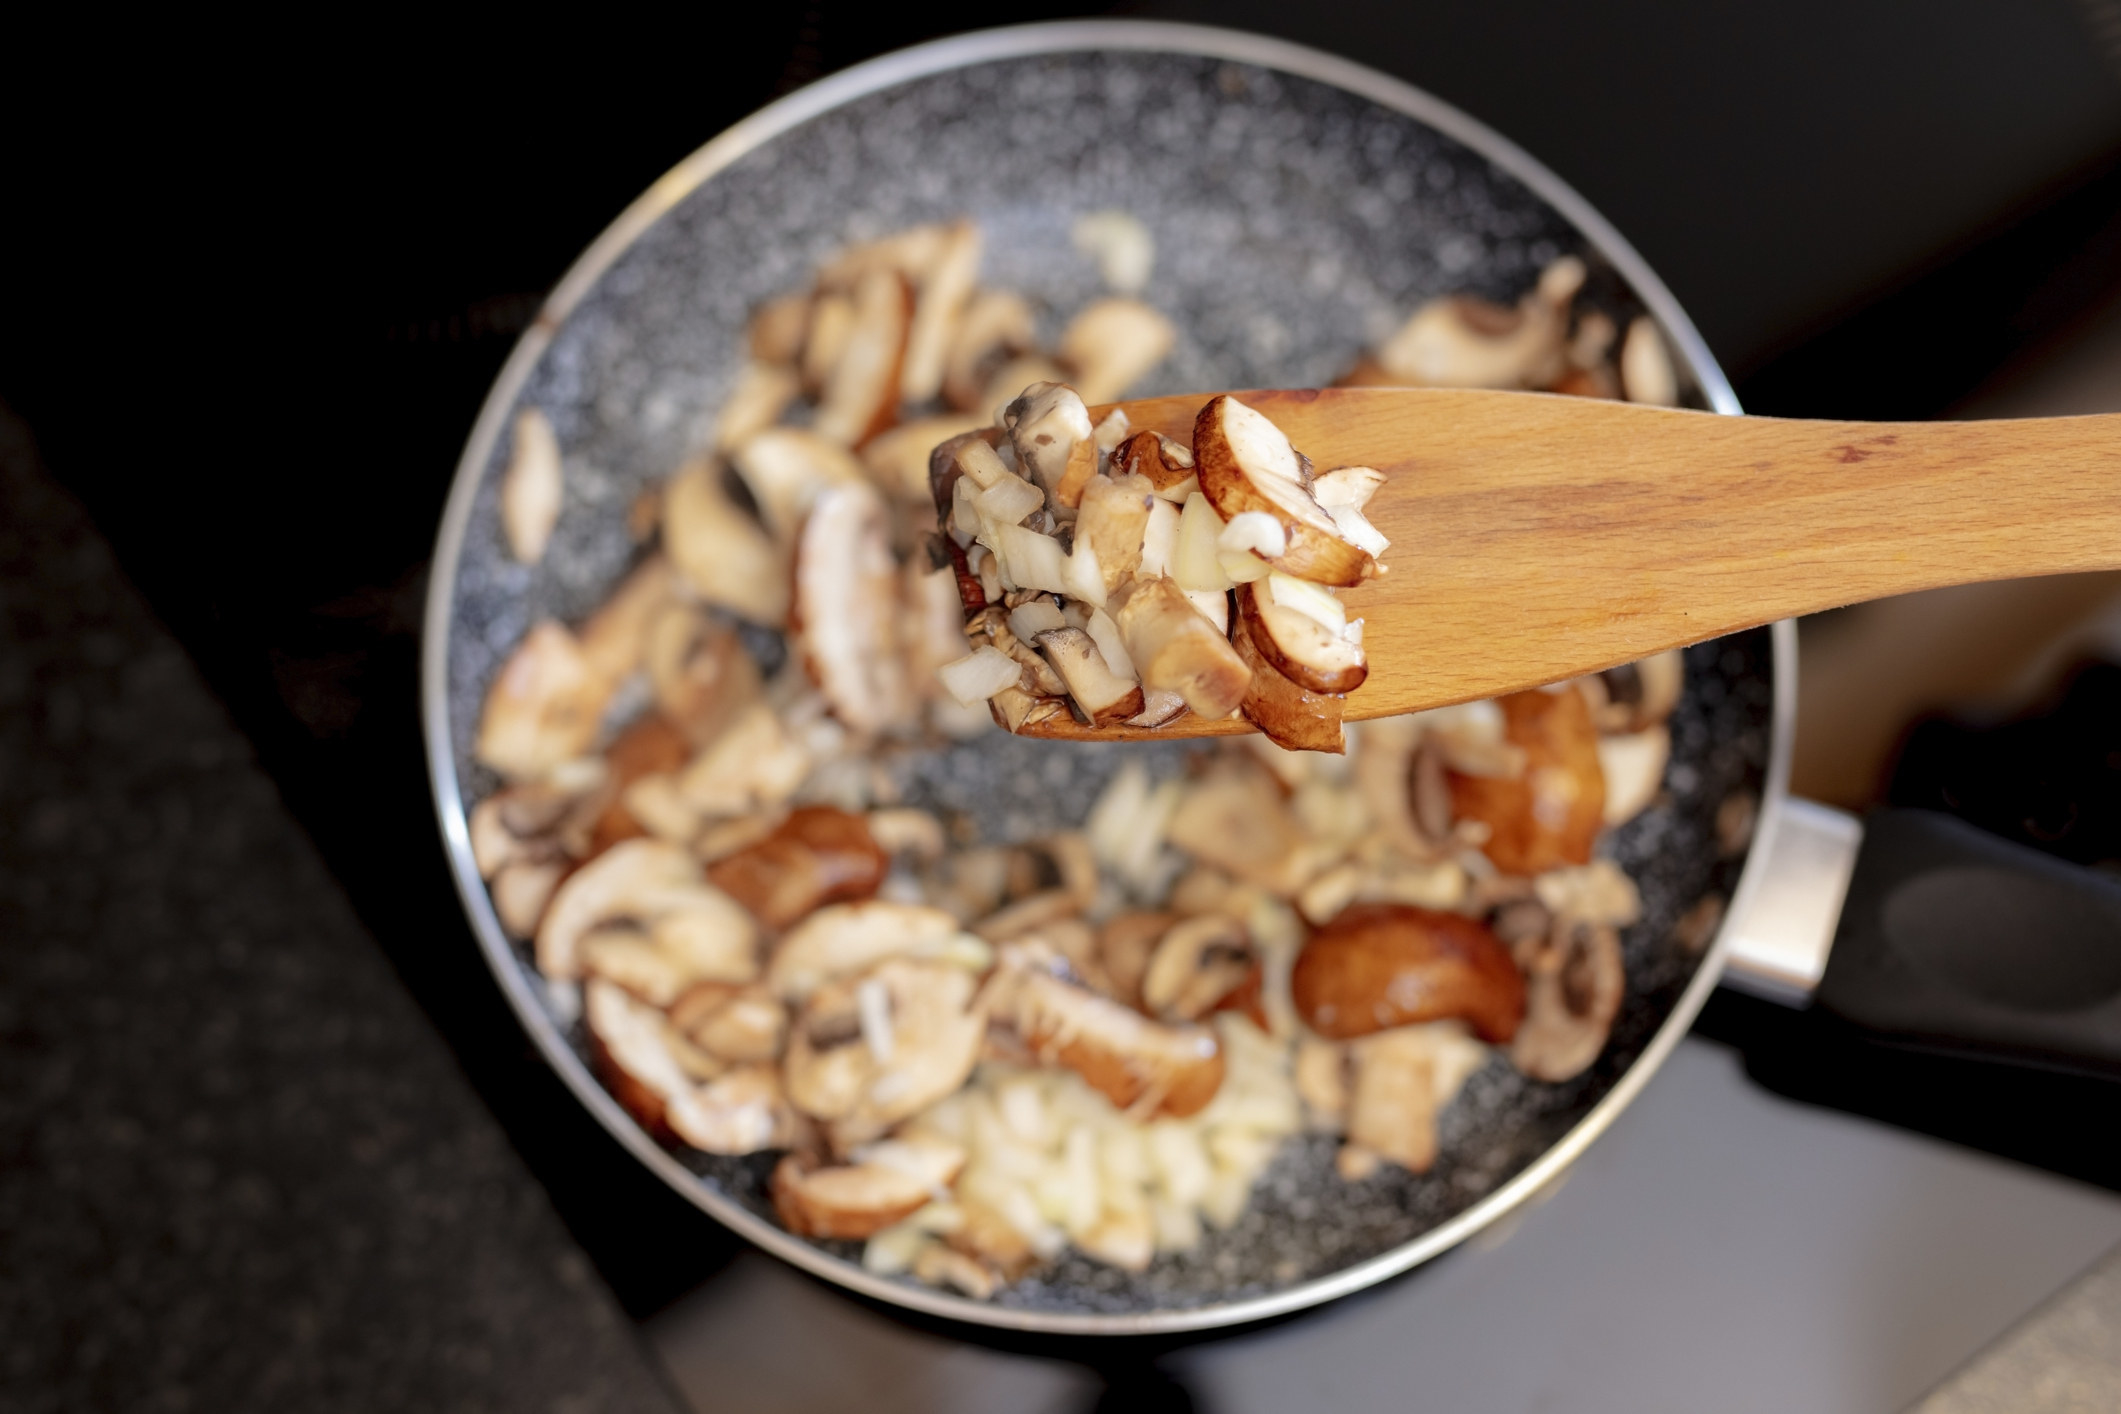 Sautéd mushrooms in a skillet.